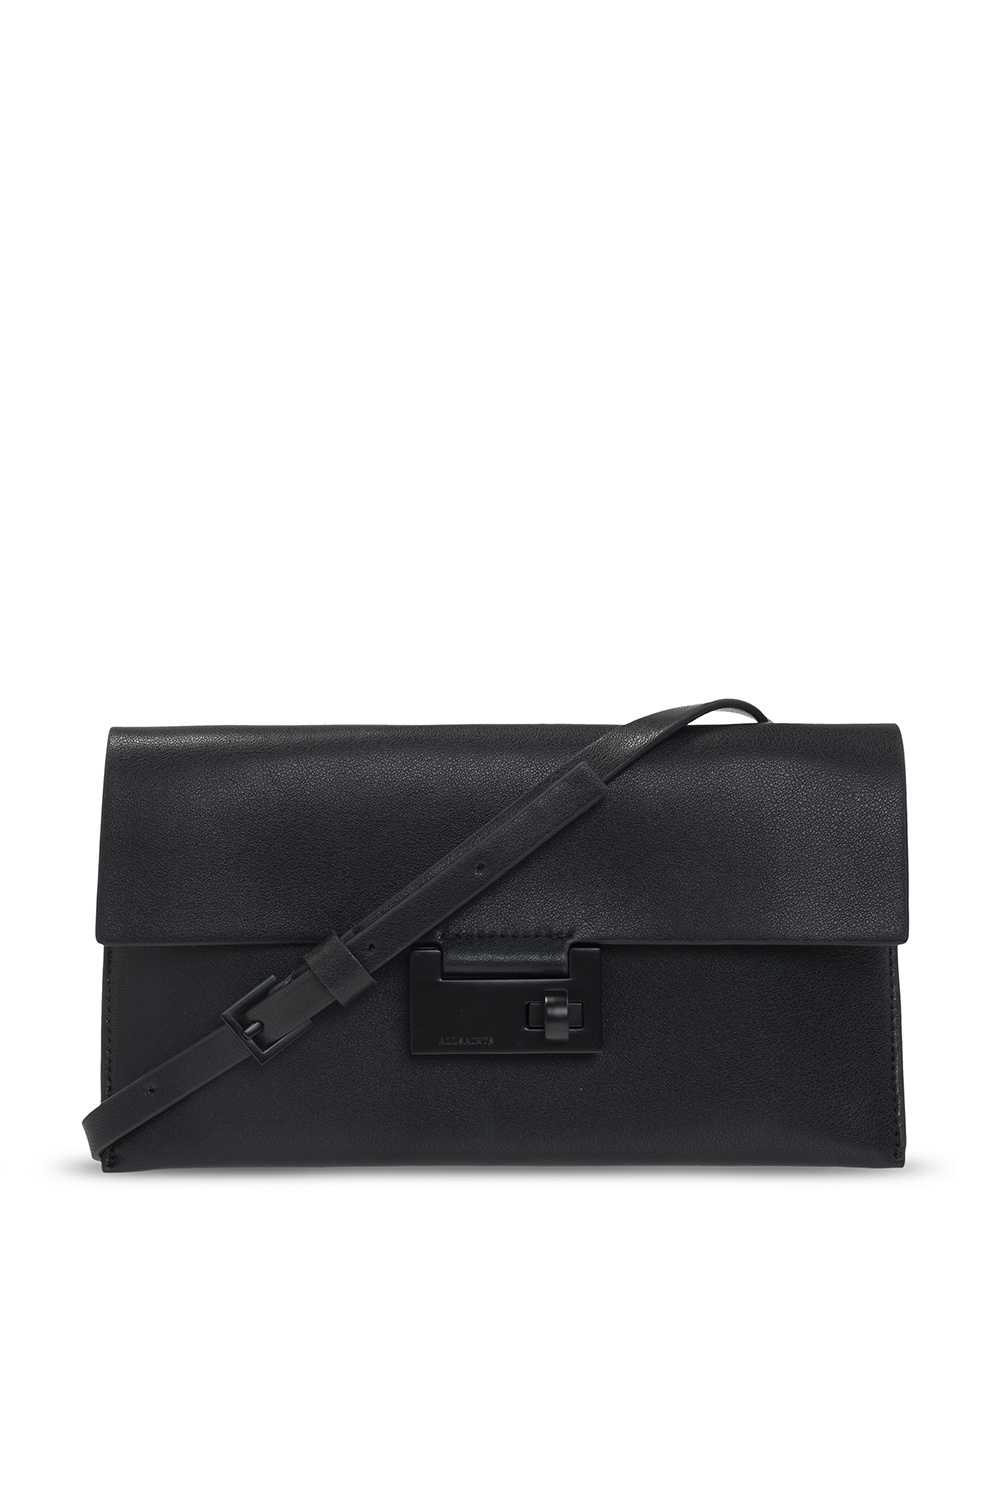 Black 'Francoise' shoulder bag AllSaints - Vitkac TW